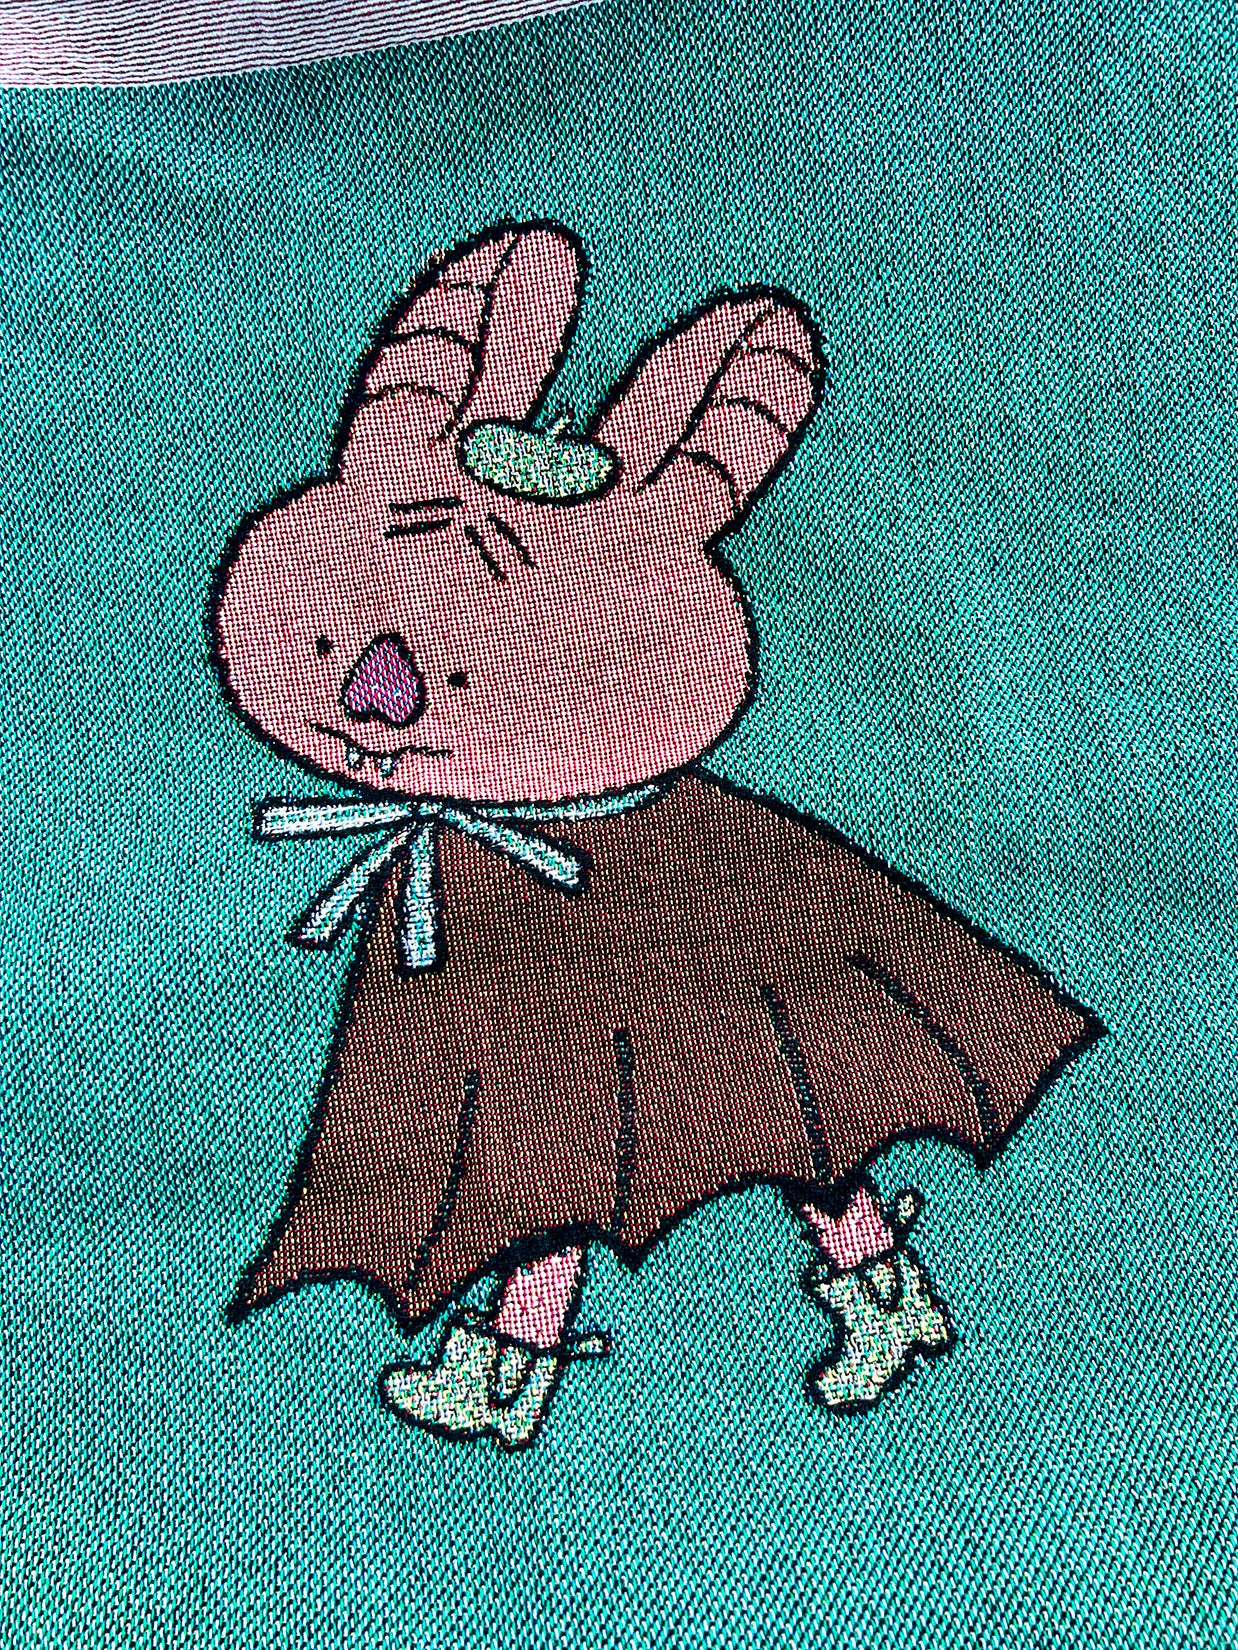 Natali Koromoto designed "Brilliantly Batty" cotton Throw blanket.